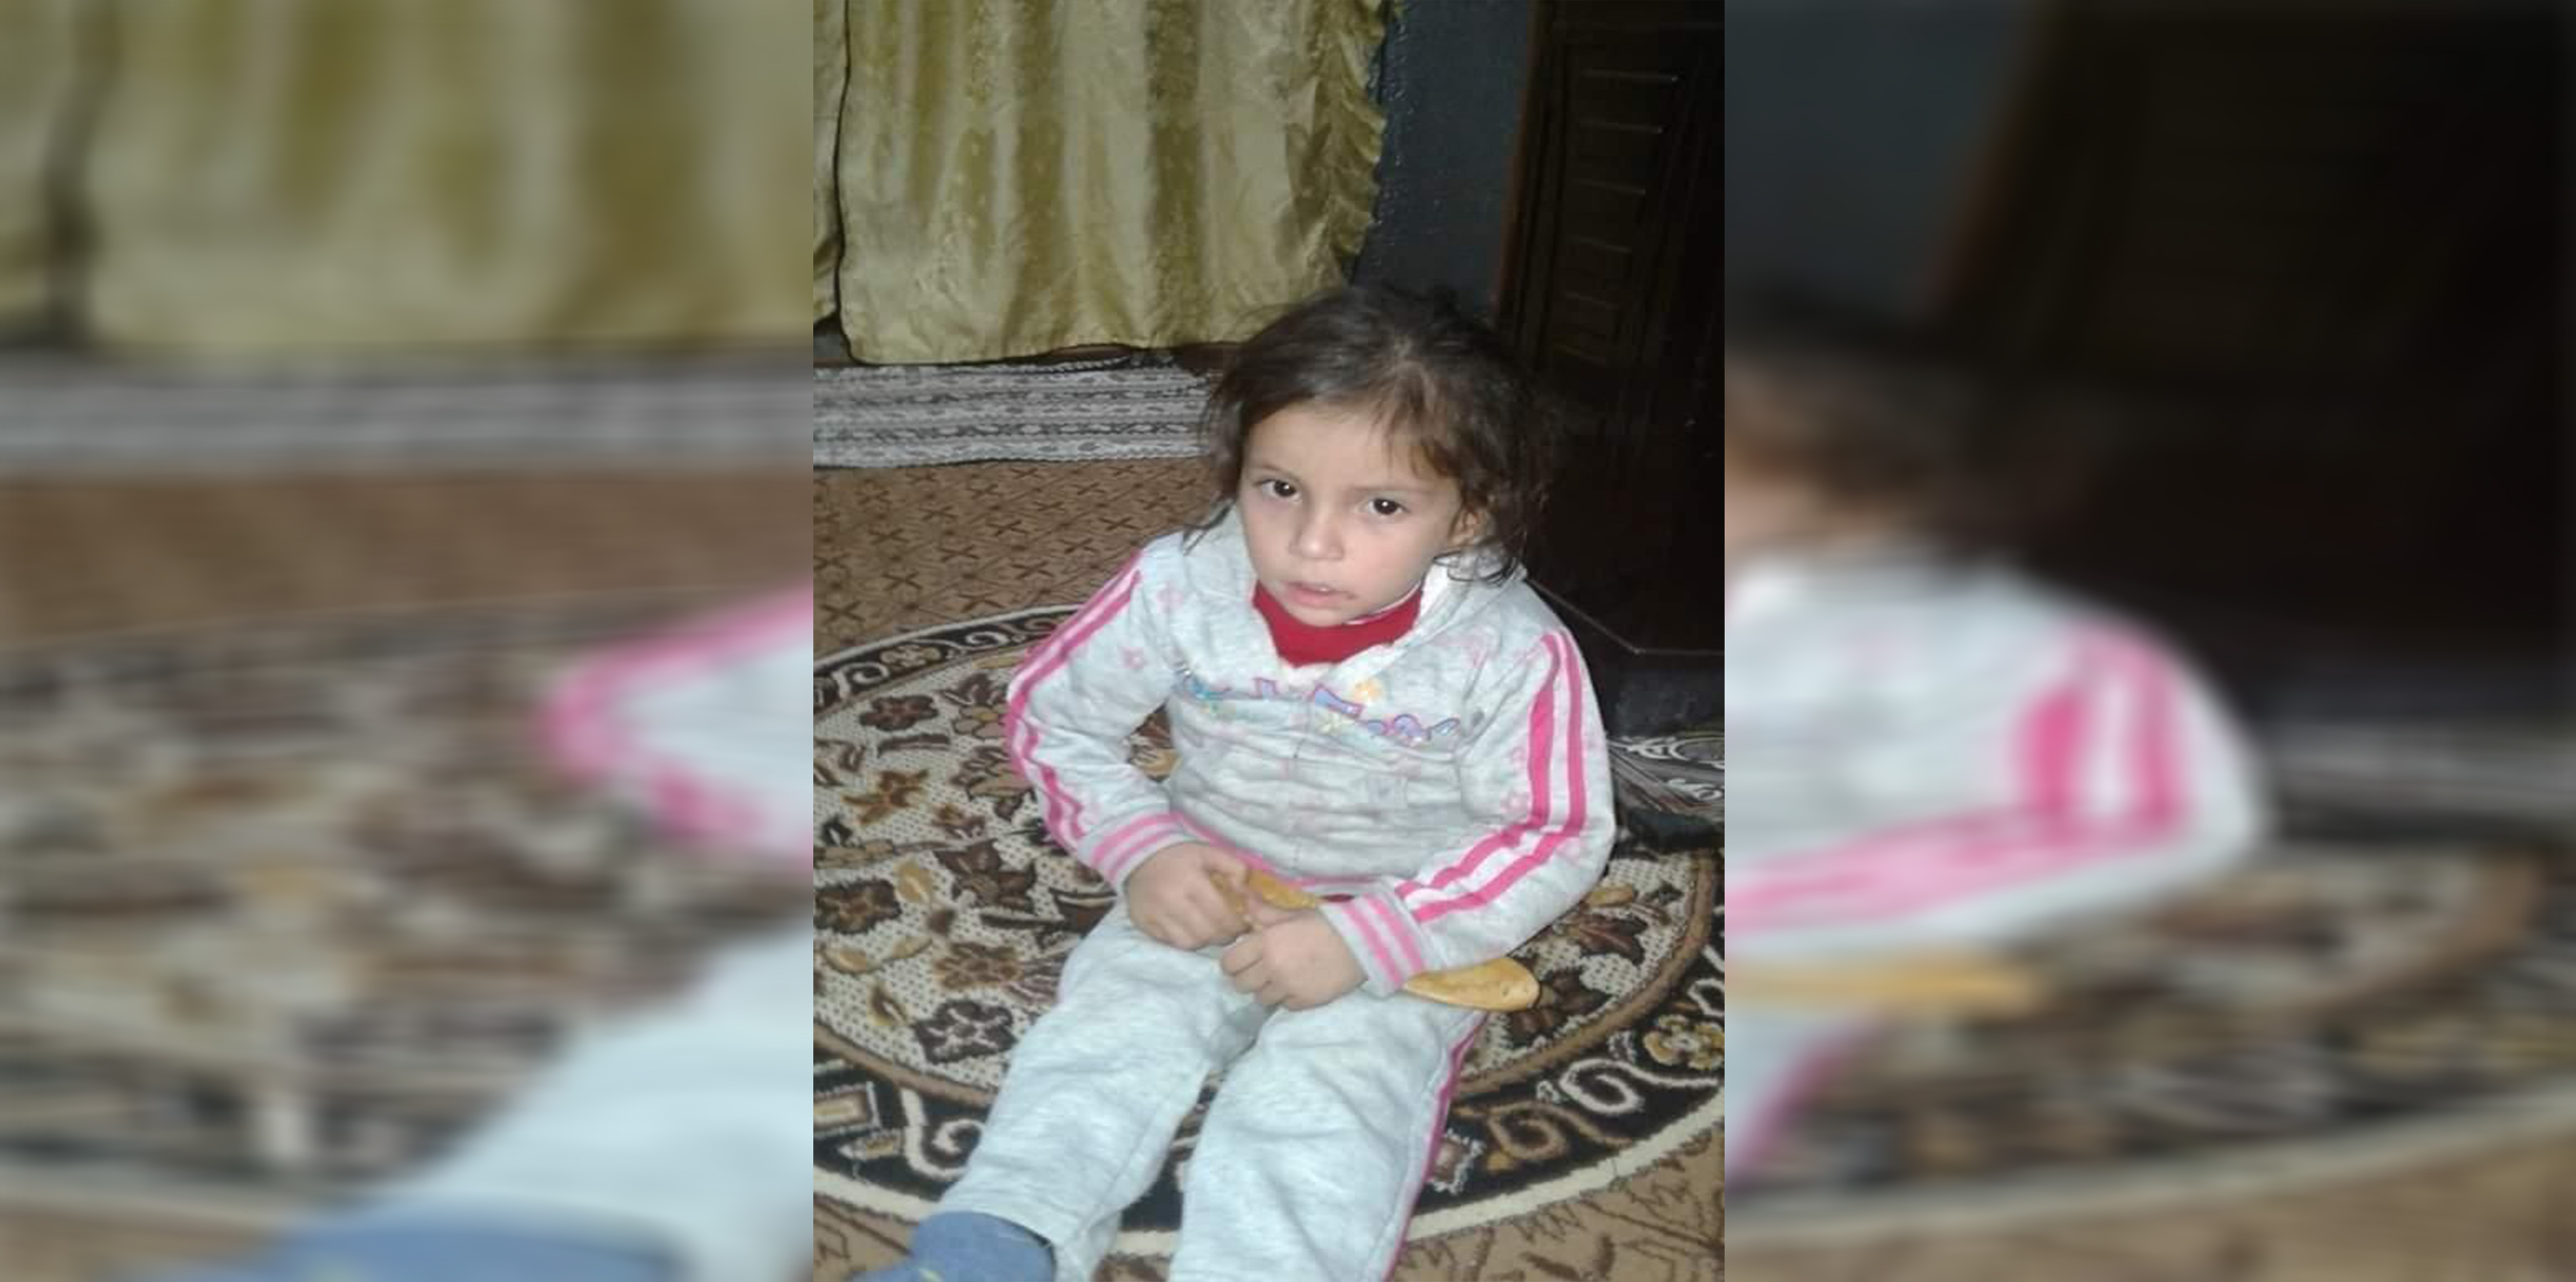 Турецкие оккупационные силы убили женщину на глазах у ее ребенка